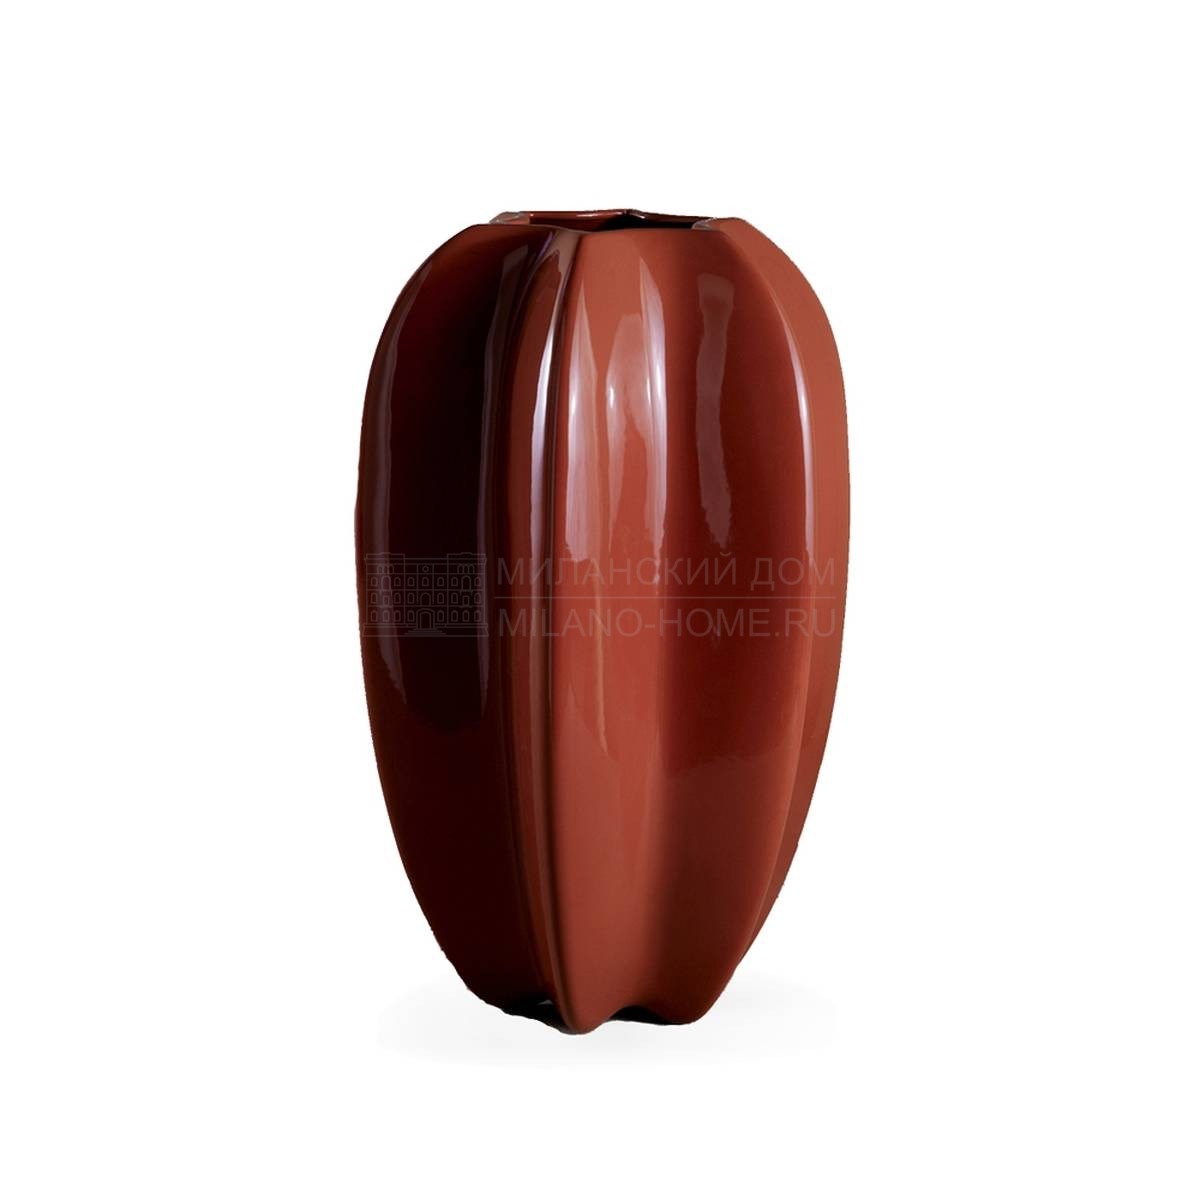 Ваза Aleph vase из Италии фабрики MARIONI